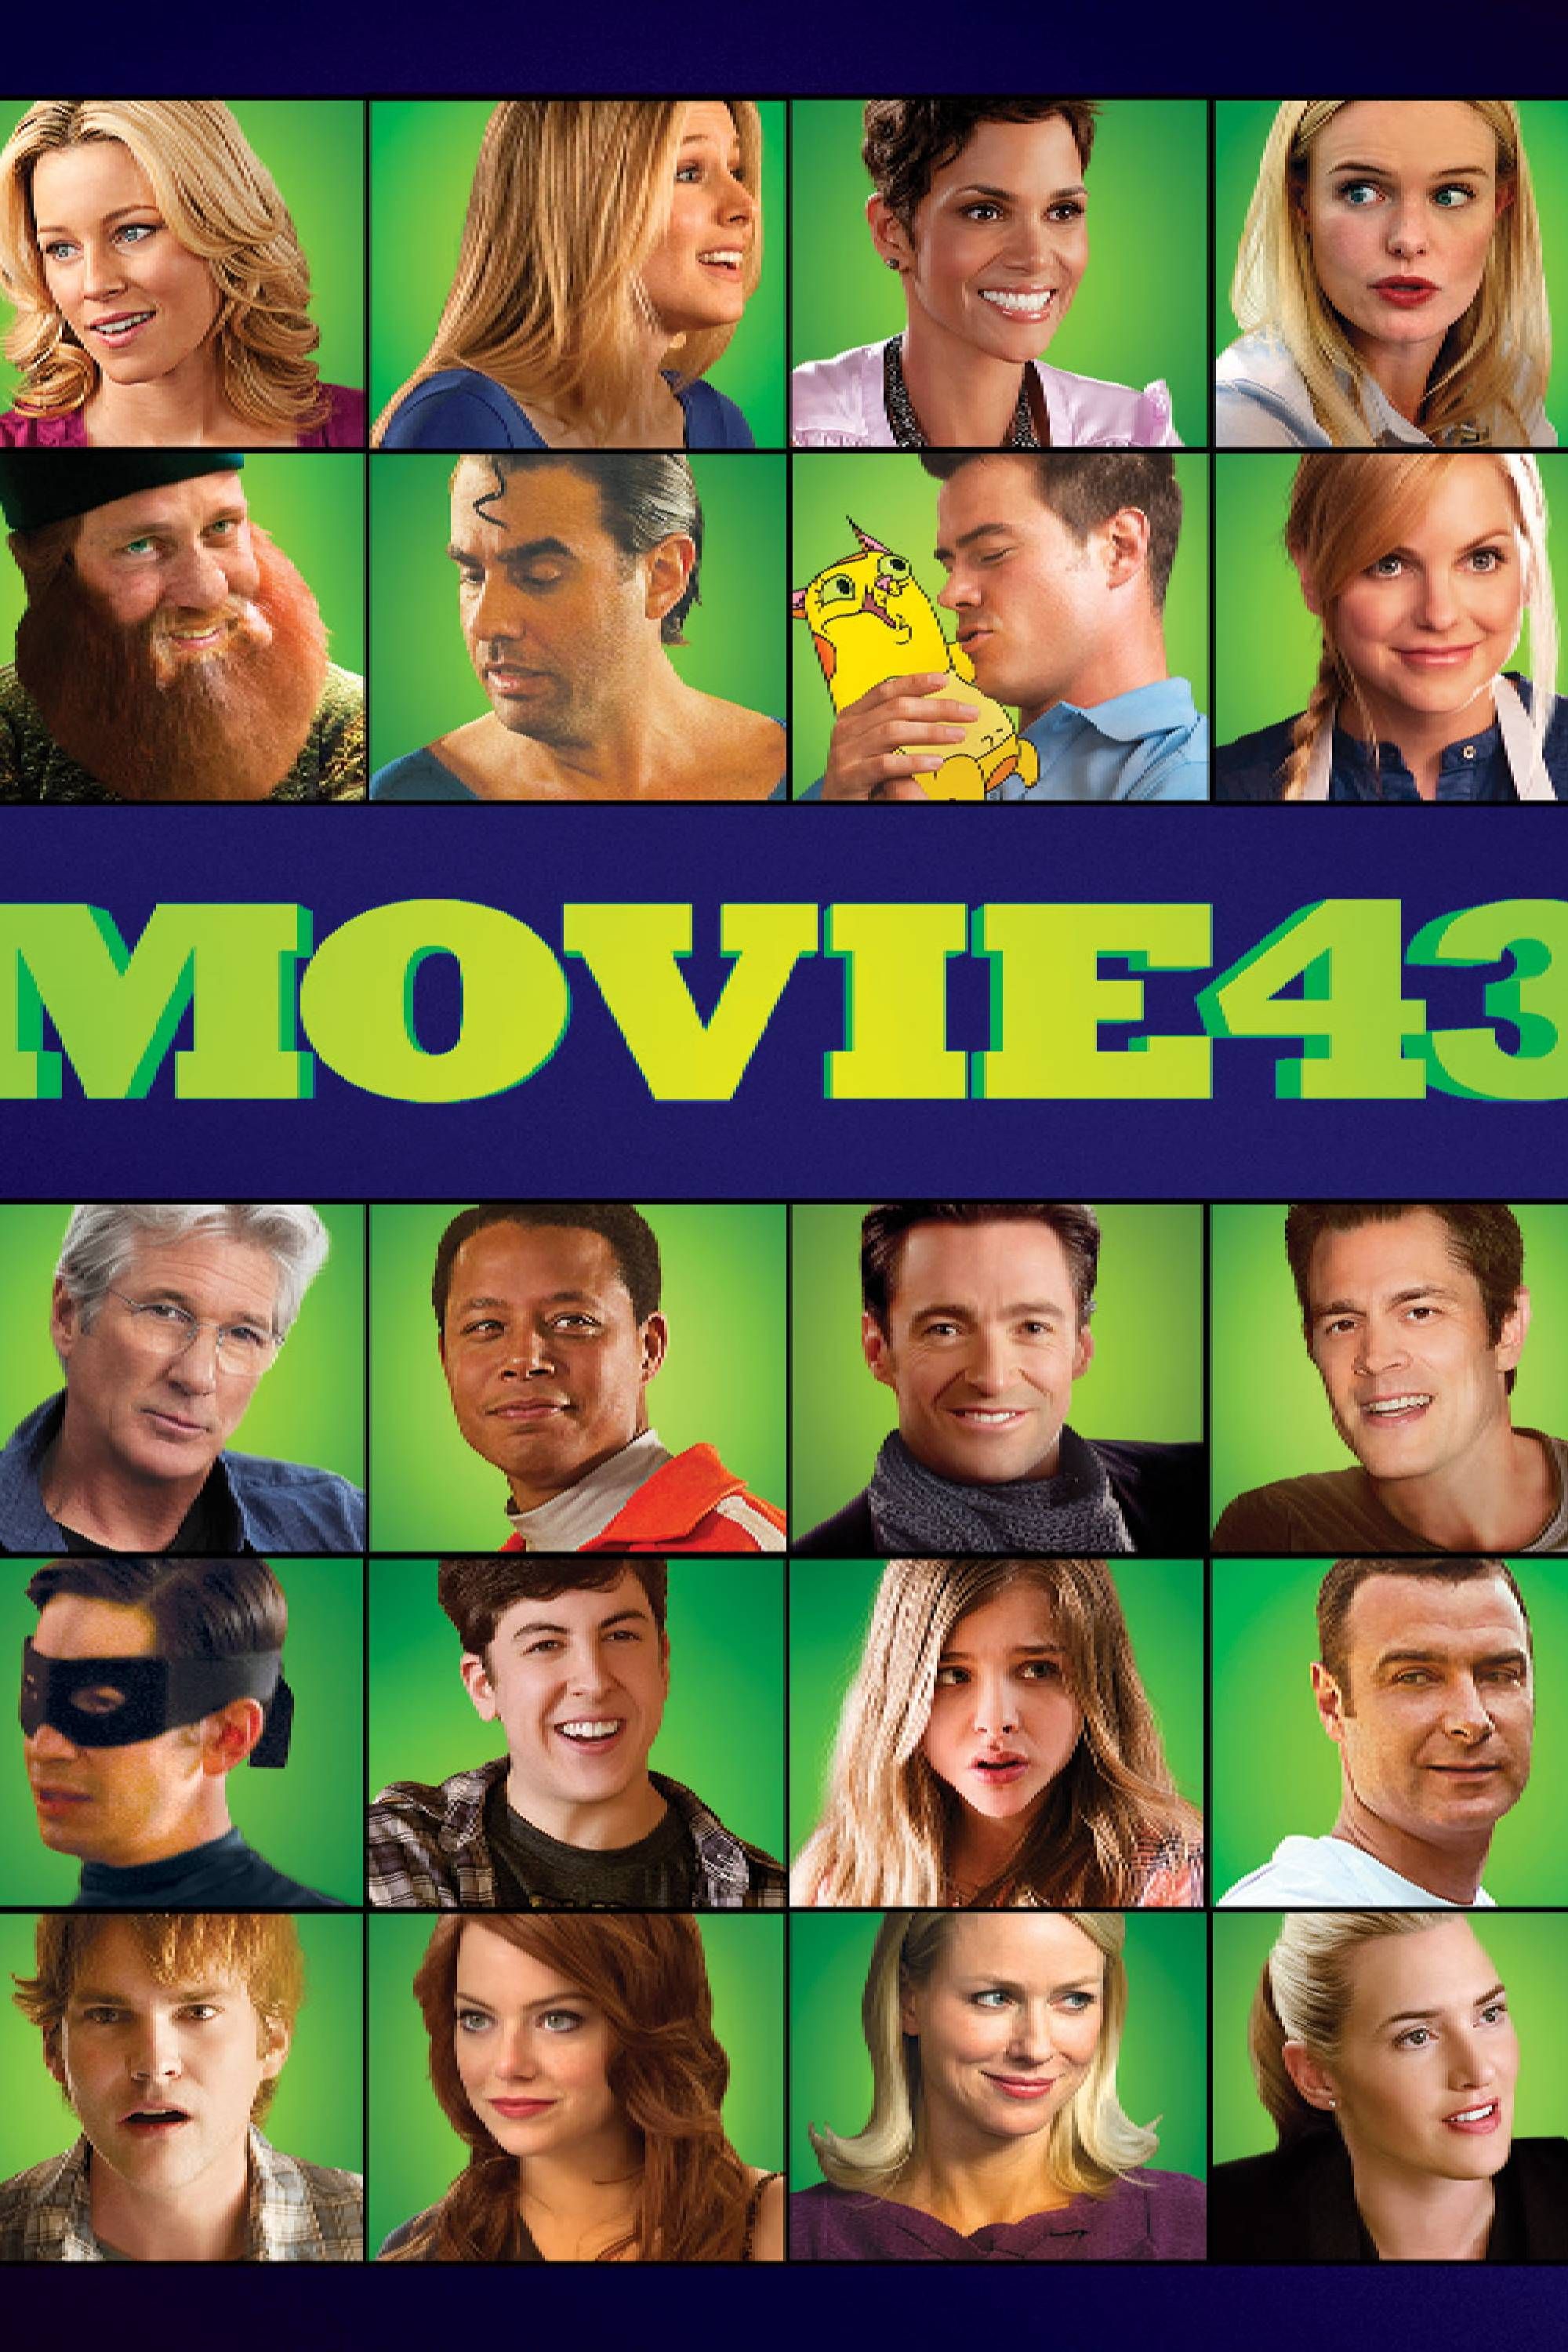 movie 43